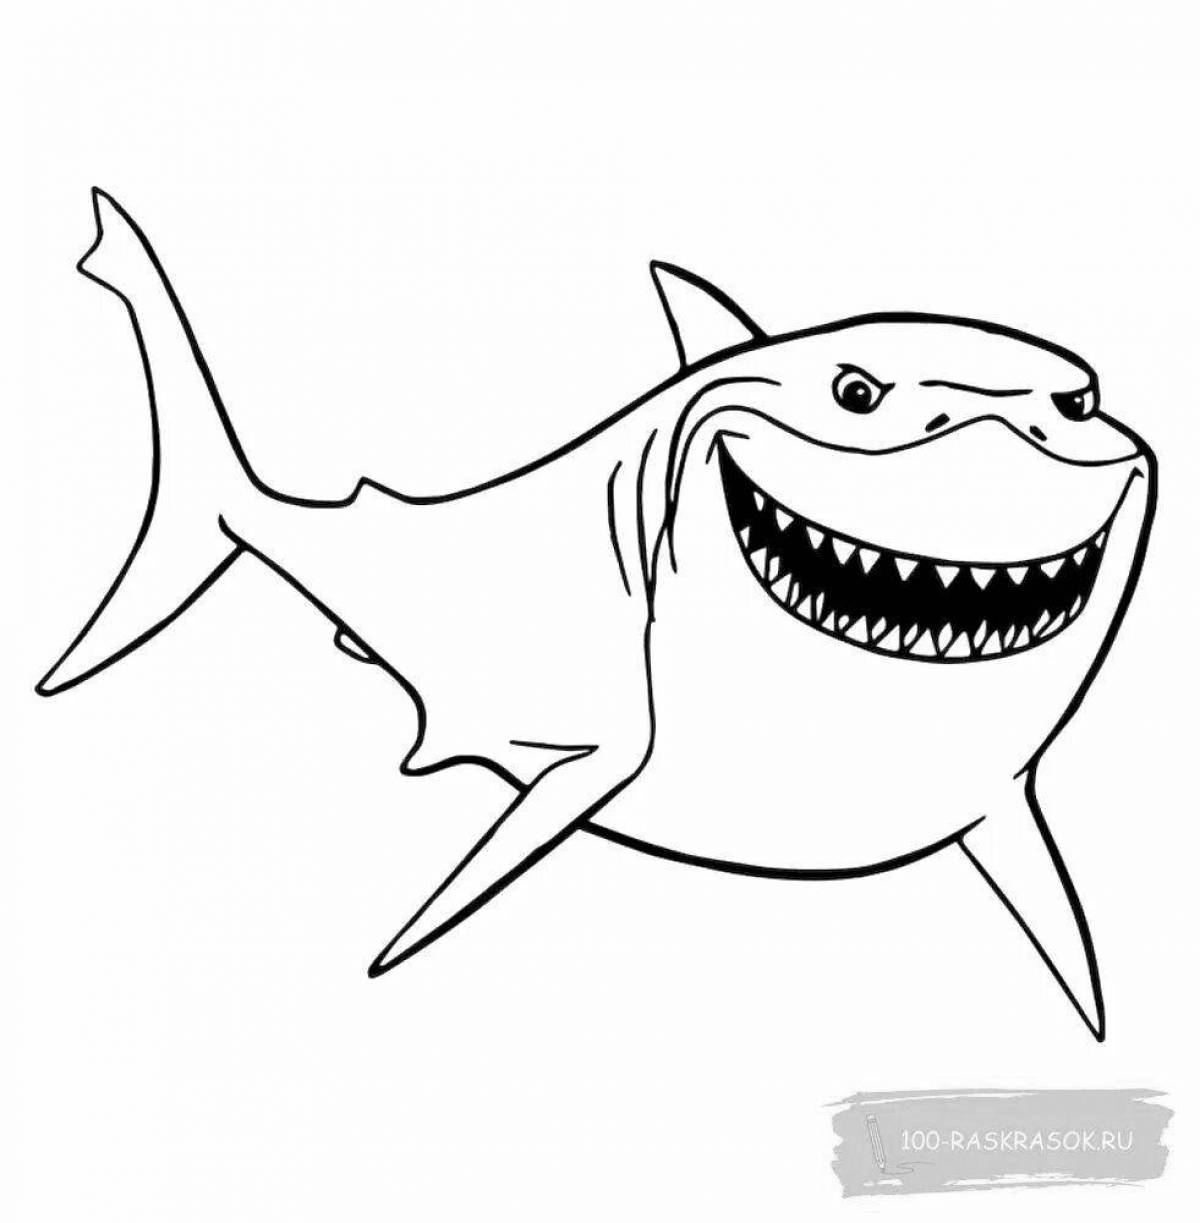 Раскраска яркая злая акула